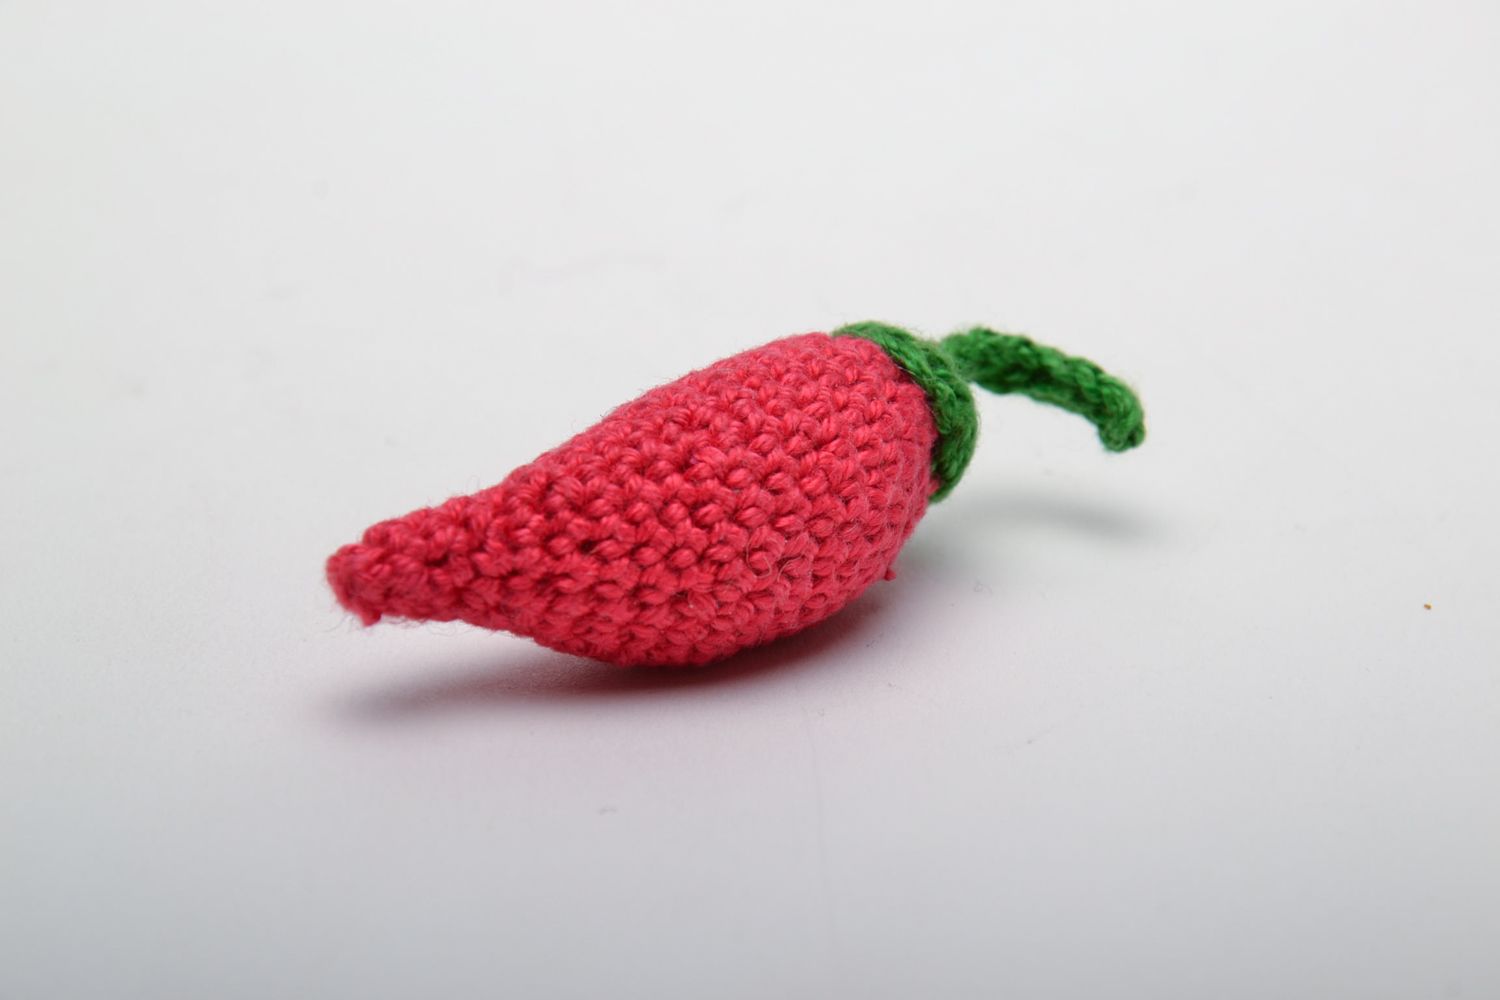 Soft crochet toy chili pepper photo 4